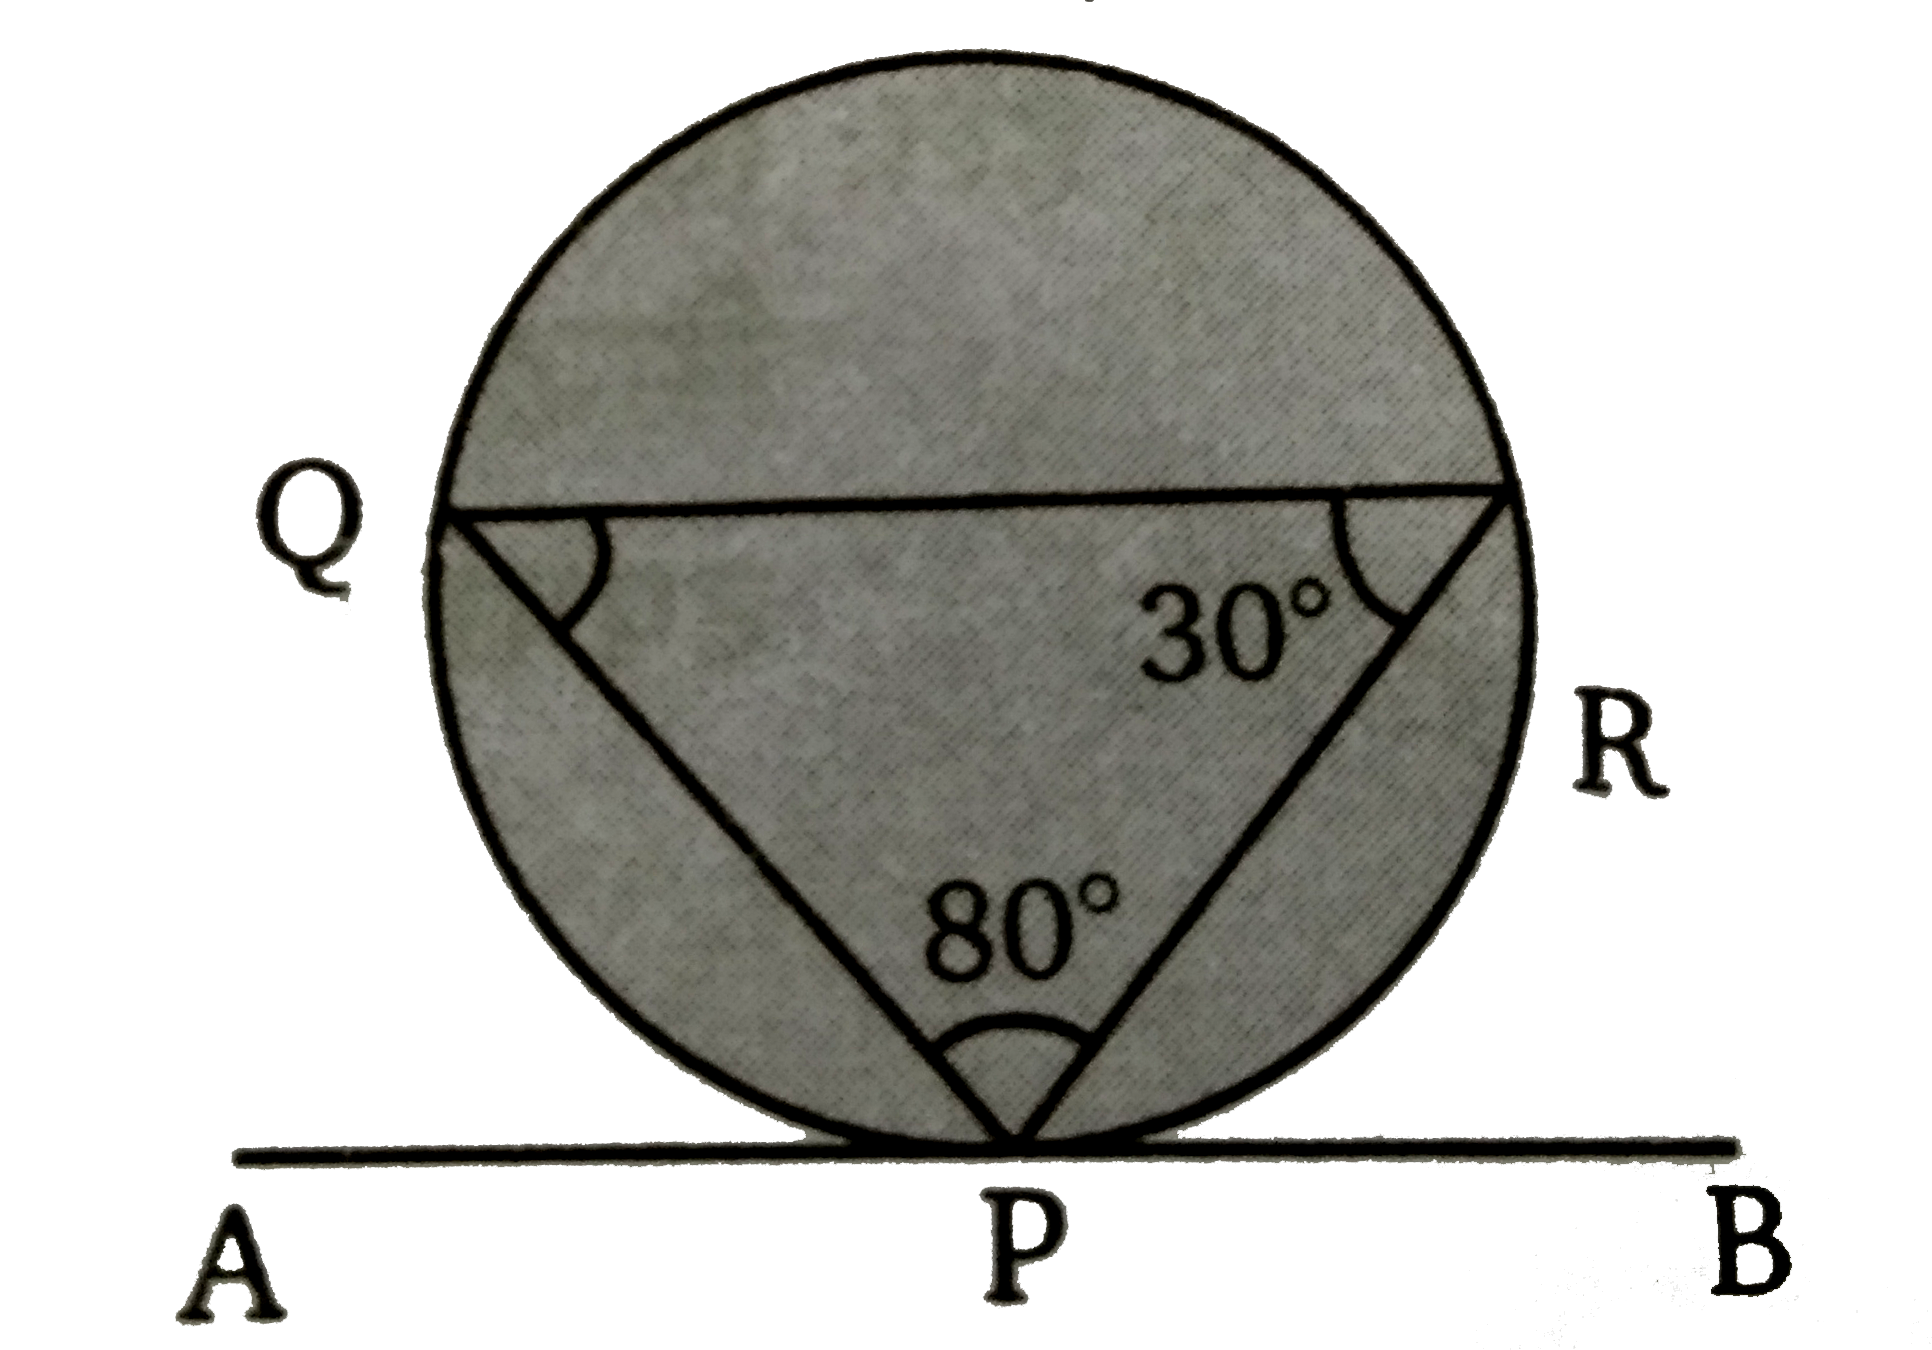 चित्र में वृत्त के बिन्दु  P  पर AB  स्पर्शी  है । यदि angle QPR = 80^(@)  व angle PRQ = 30^(@)  तब angle RPB  का मान ज्ञात कीजिए।